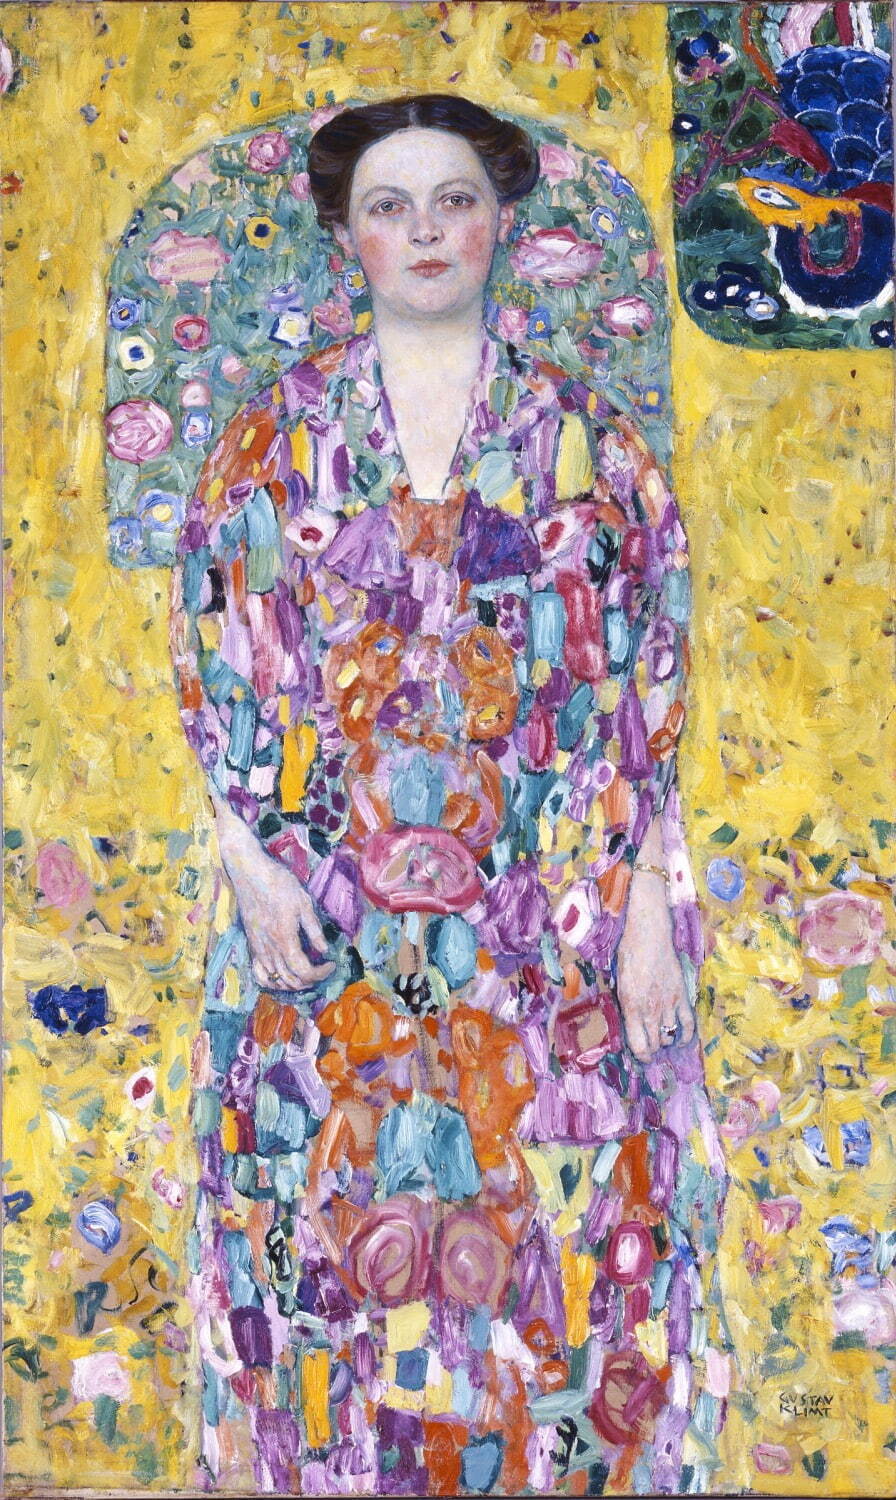 グスタフ・クリムト《オイゲニア・プリマフェージの肖像》1913/14年、油彩、カンヴァス、140.0×85.0cm、豊田市美術館蔵